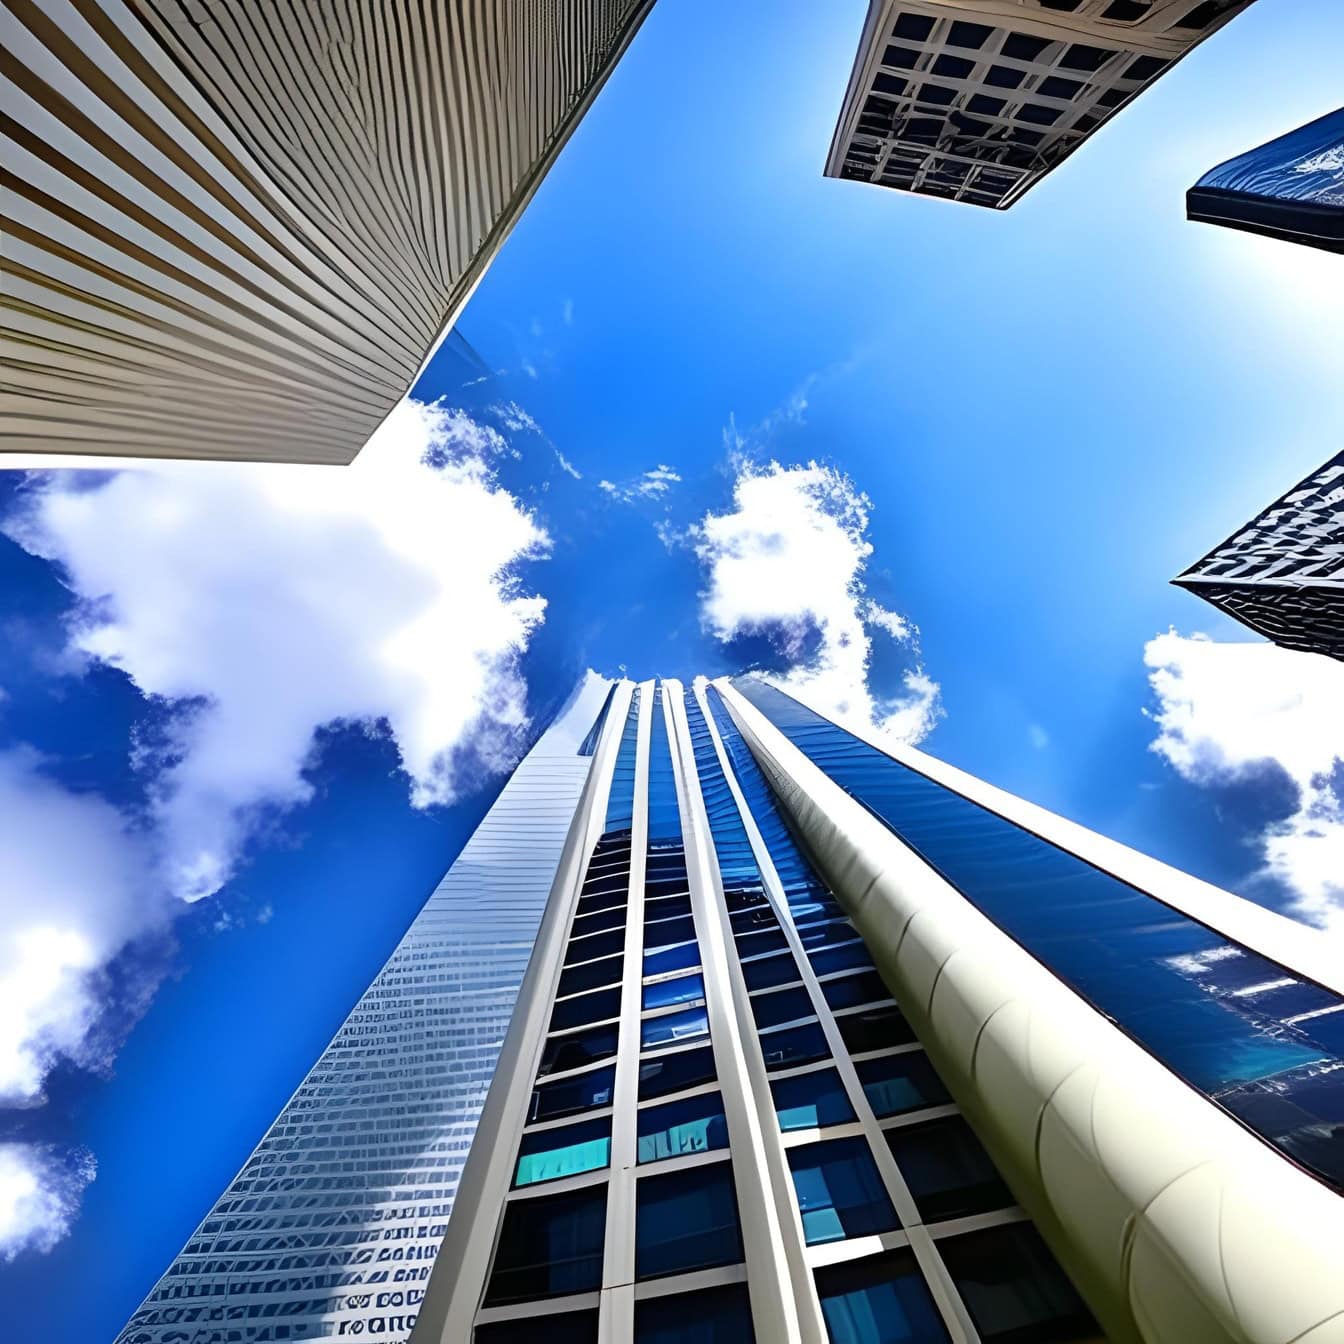 배경에 푸른 하늘이 있는 높은 현대 건물의 낮은 각도 원근법